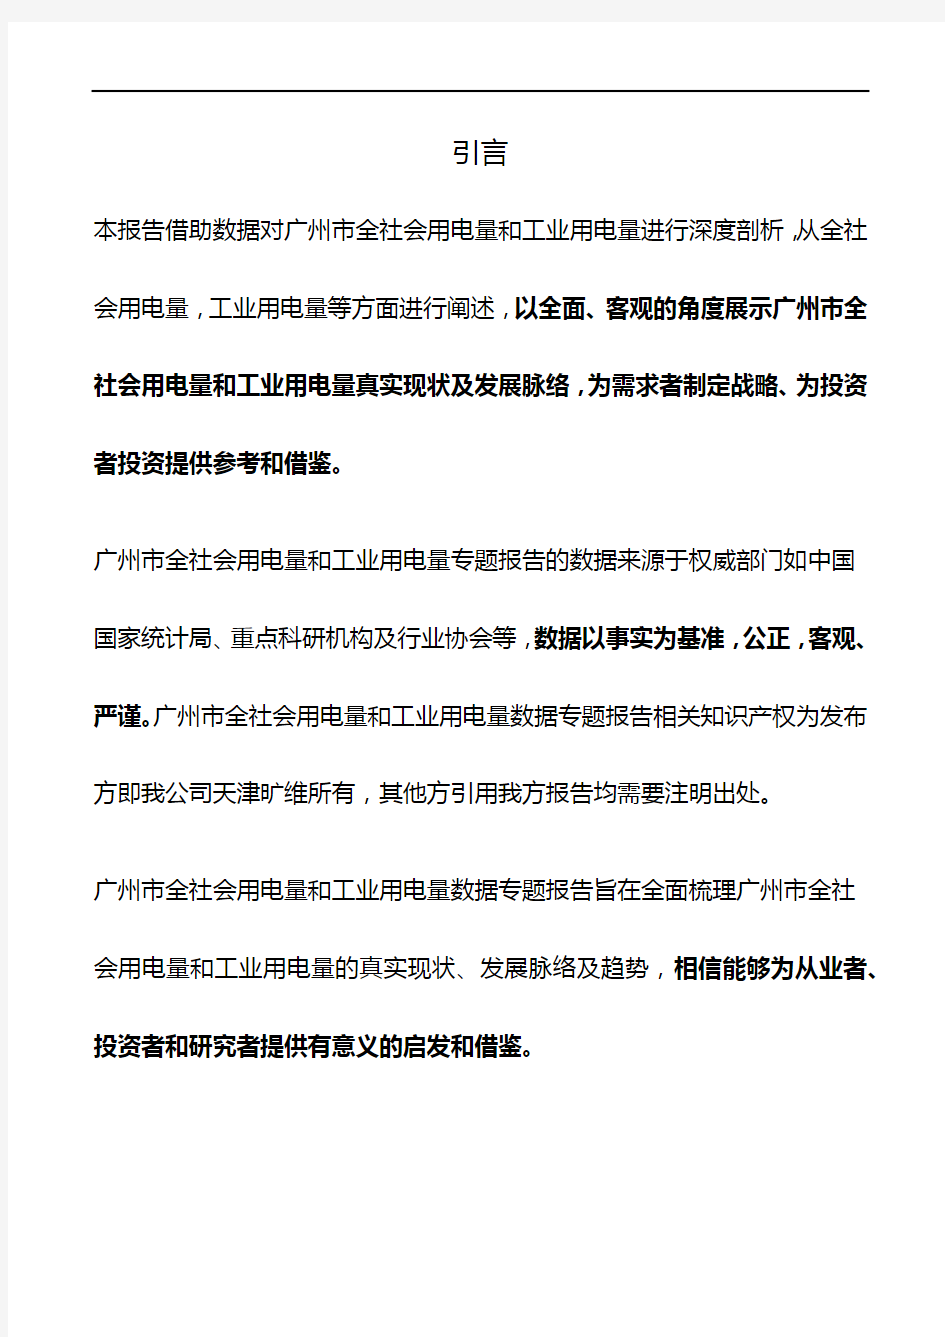 广州市(全市)全社会用电量和工业用电量3年数据专题报告2019版